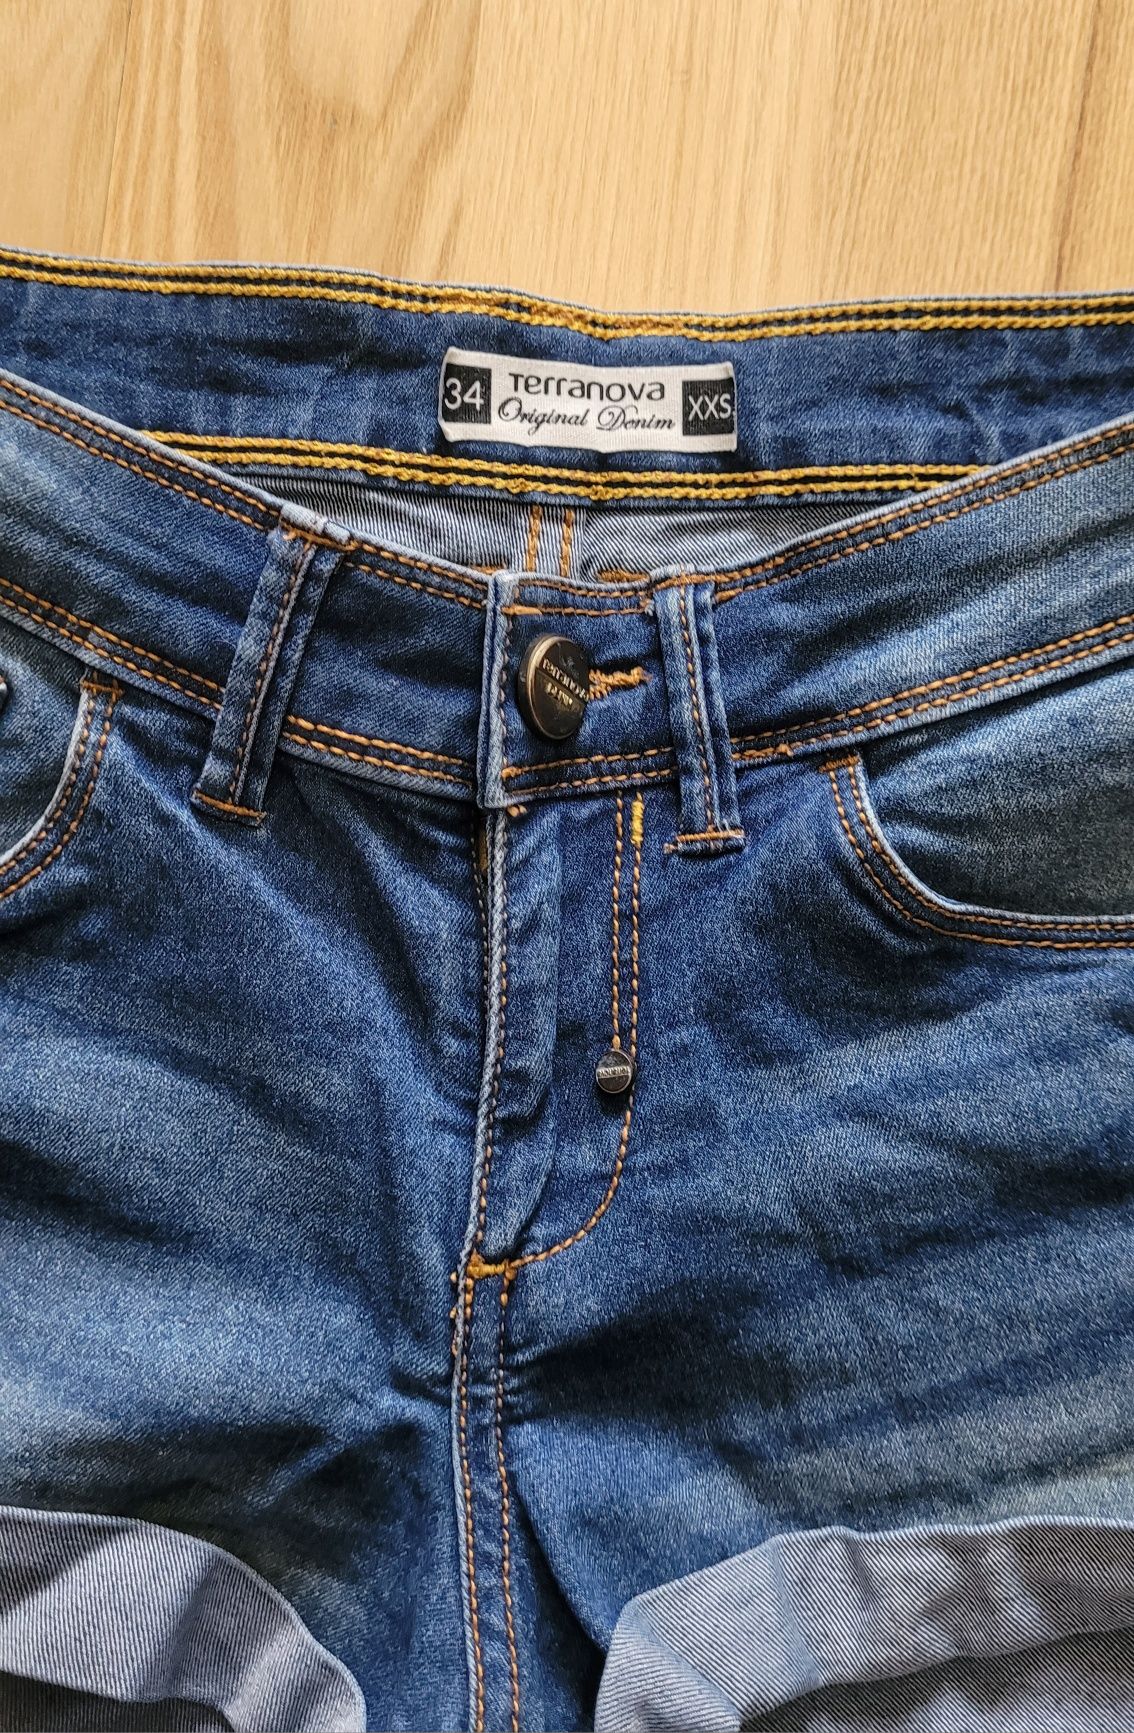 Krótkie spodenki jeansowe, szorty Terranova Rozmiar 34